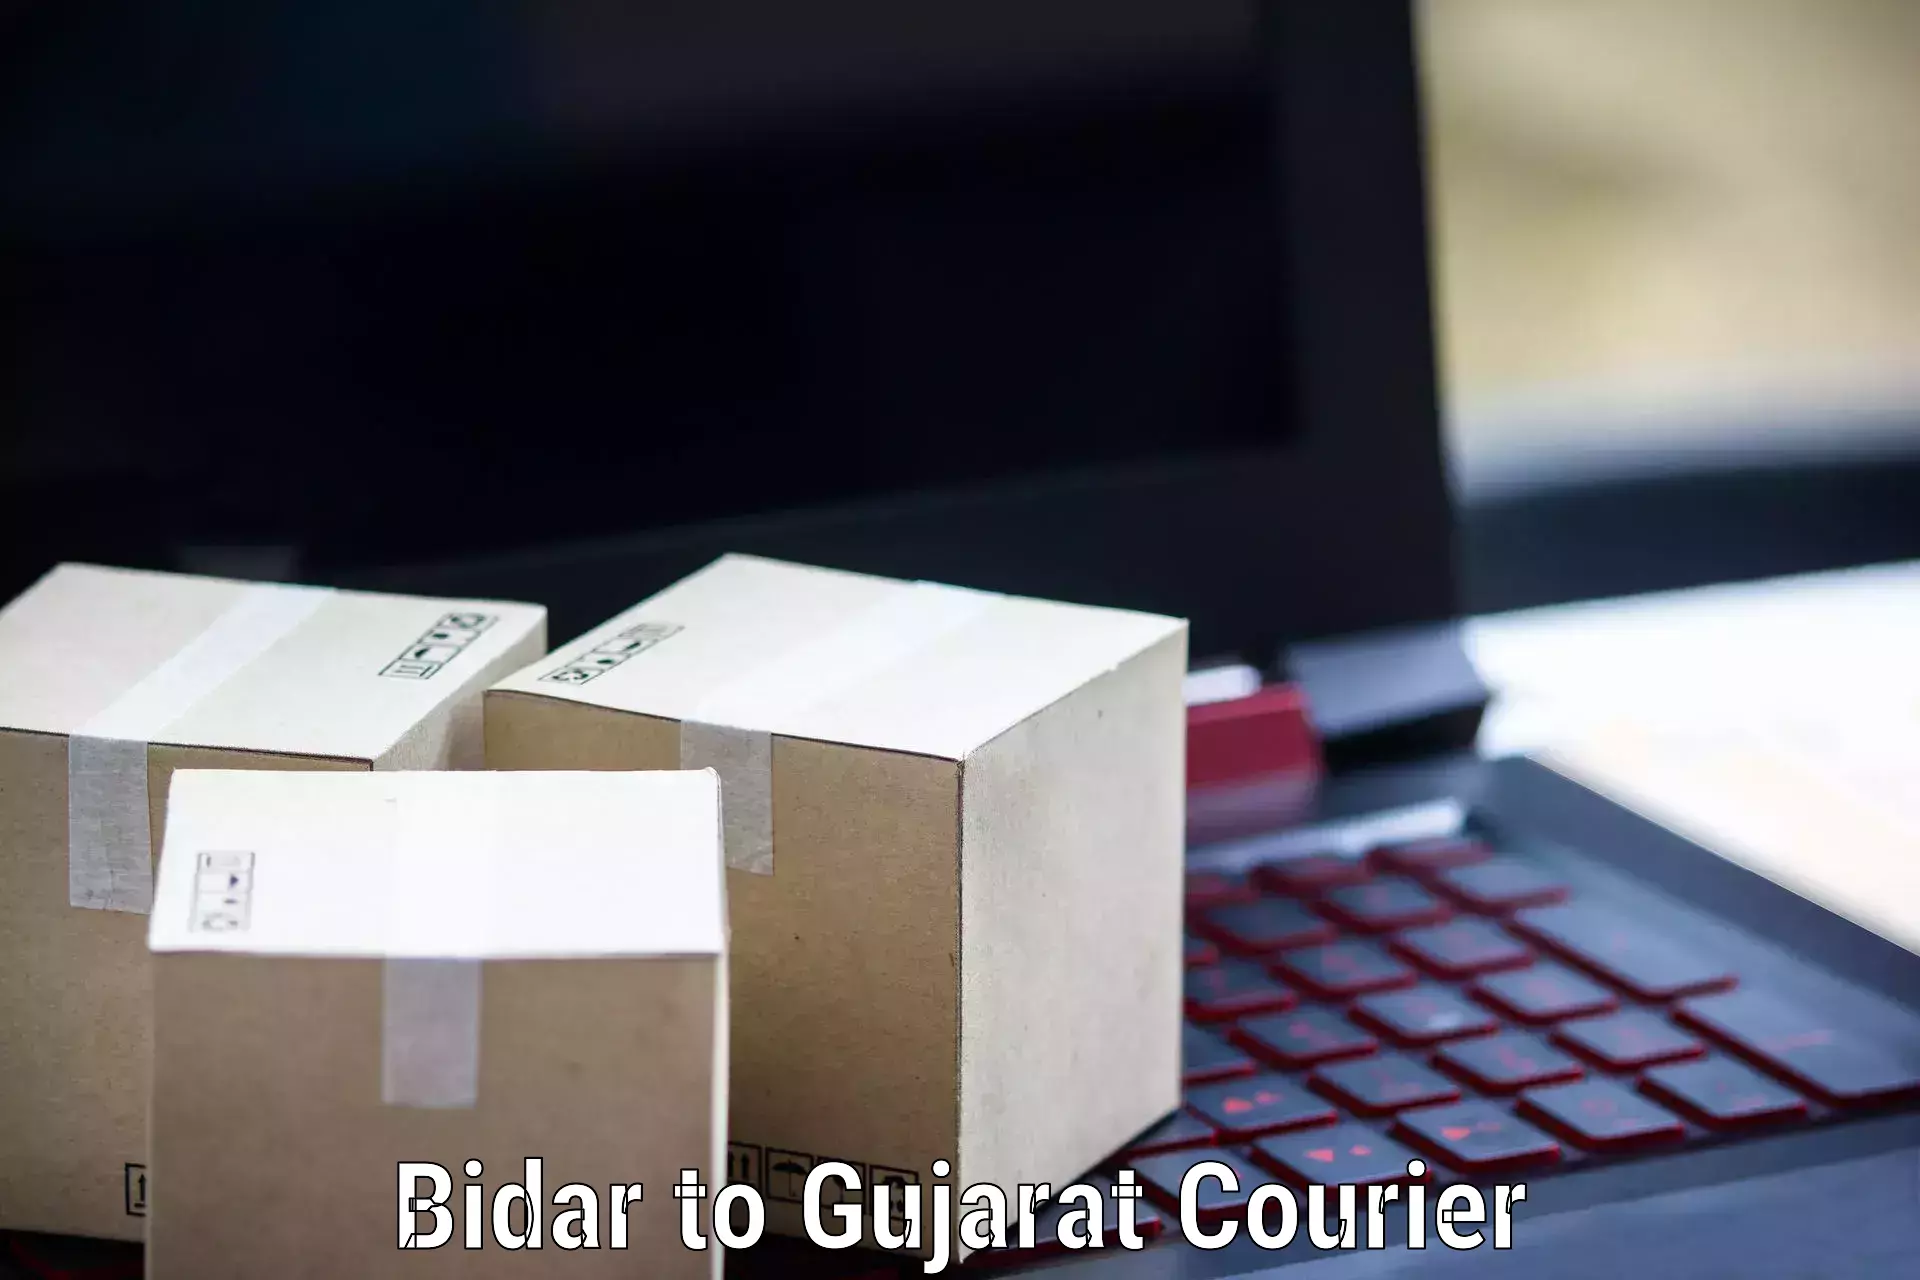 Overnight delivery services Bidar to Dahej